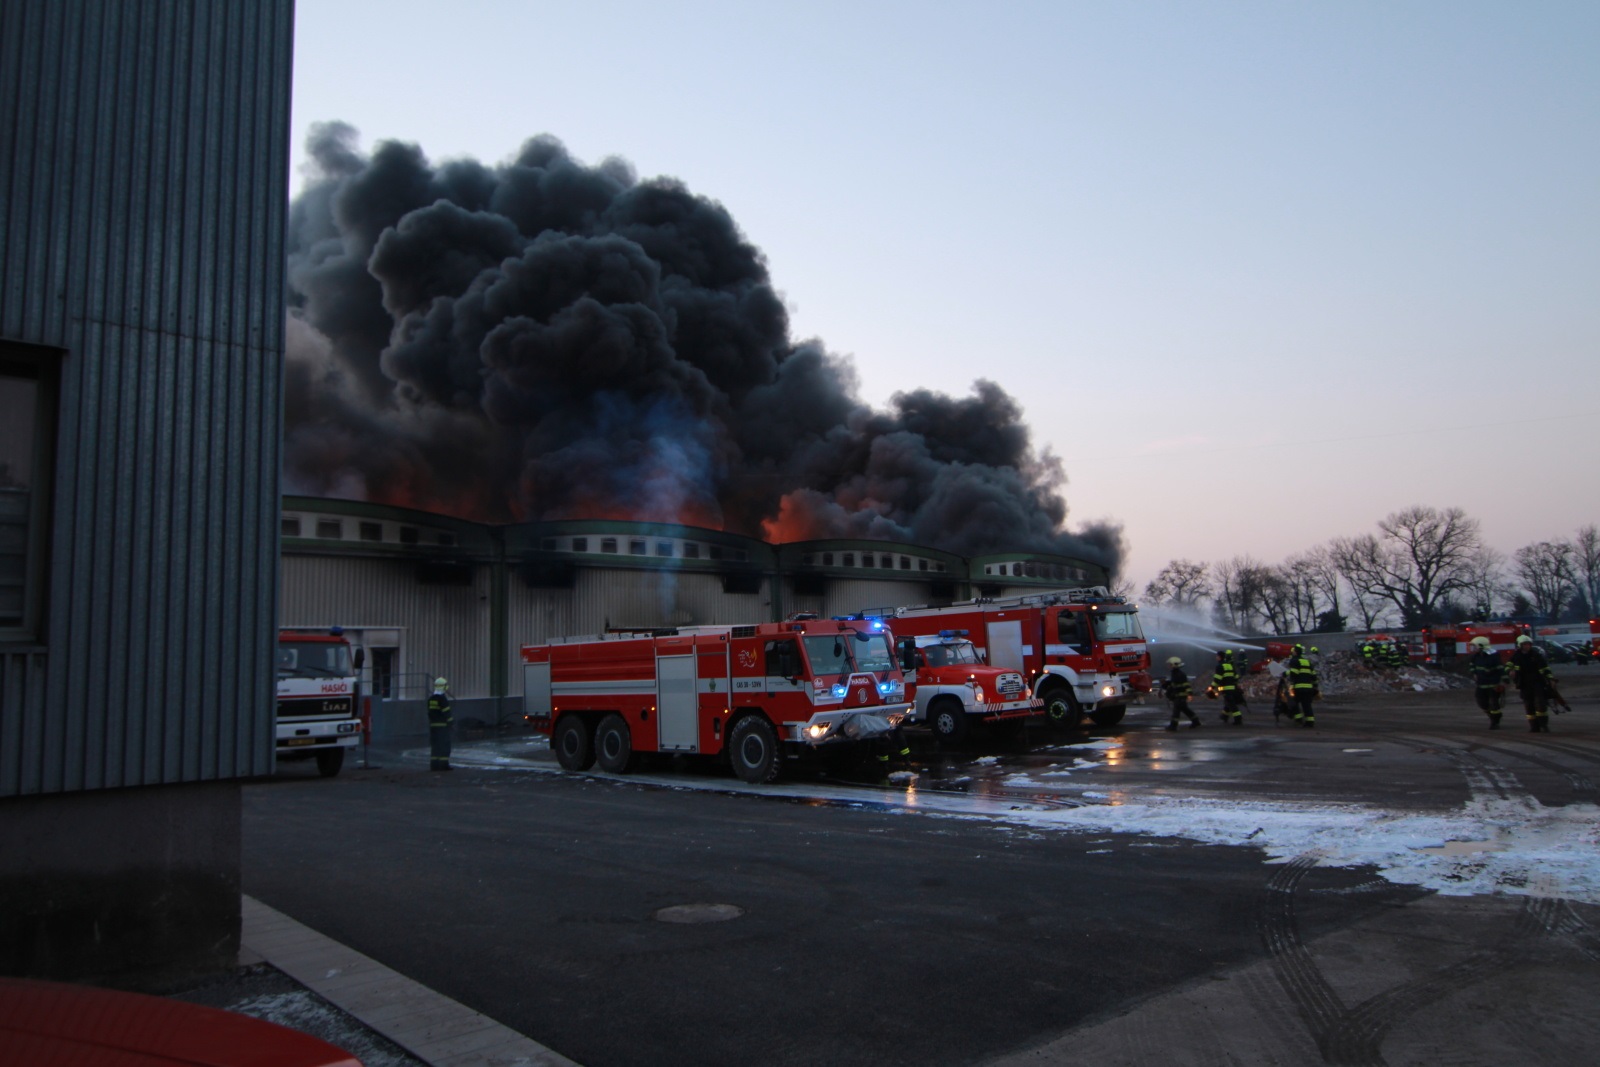 59_SČK_Požár mrazíren v Mochově_z budovy stoupá hustý černý kouř, před ní stojí hasičská technika a hasiči, kteří zasahují.jpg